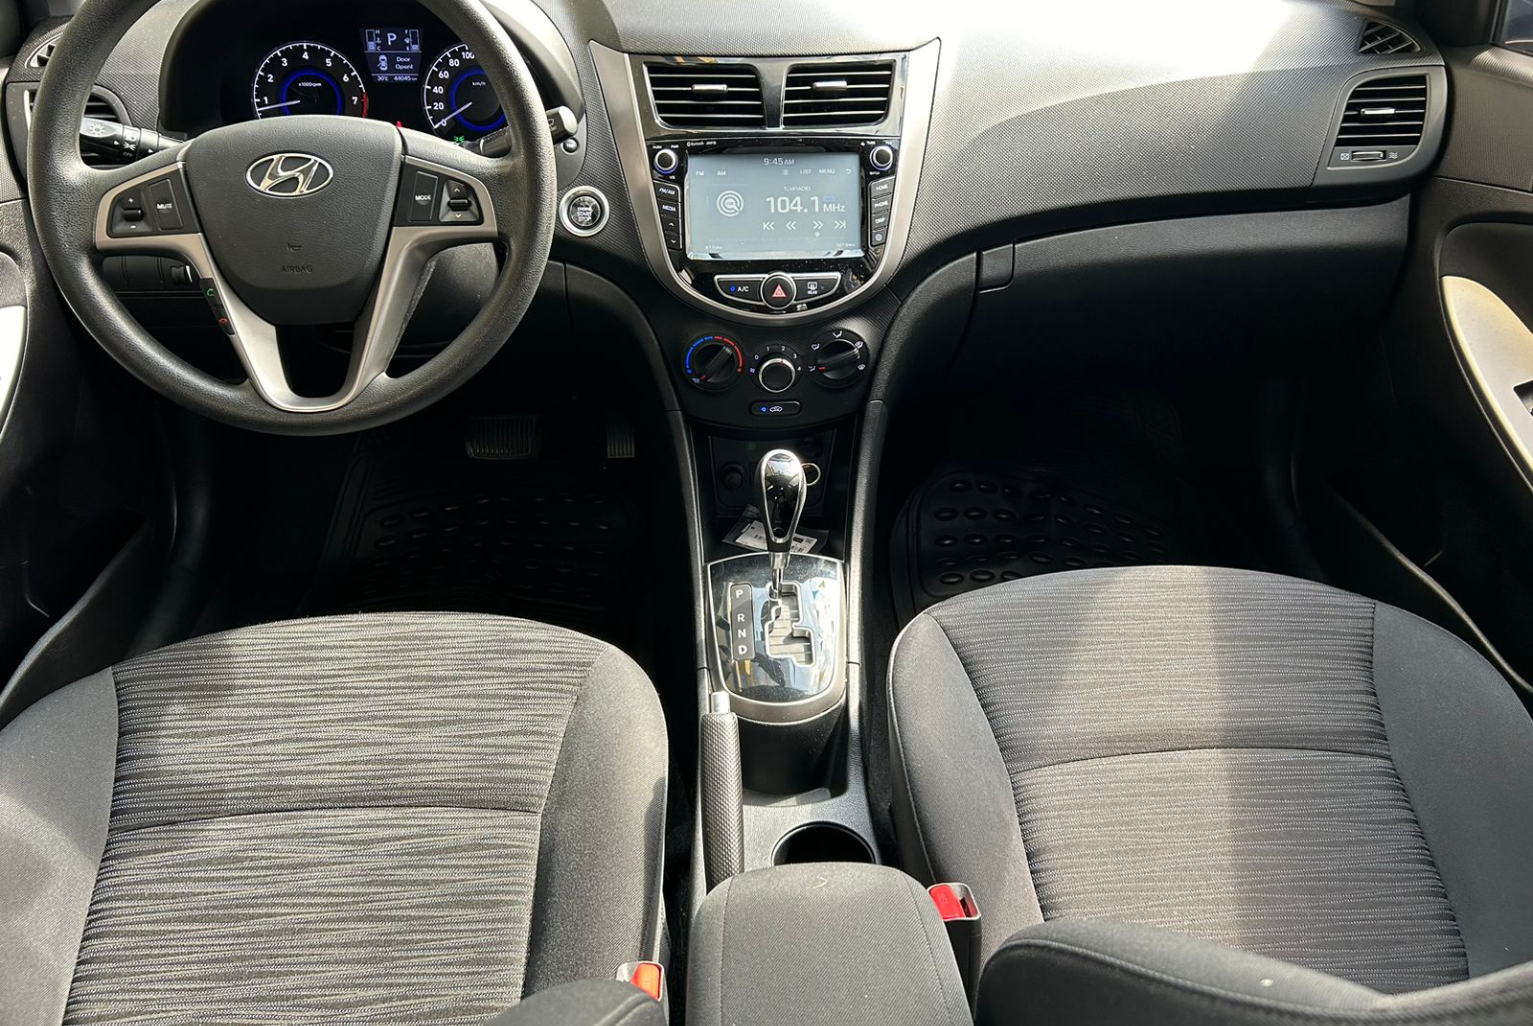 Hyundai Accent 2019 Automático color Plateado, Imagen #9